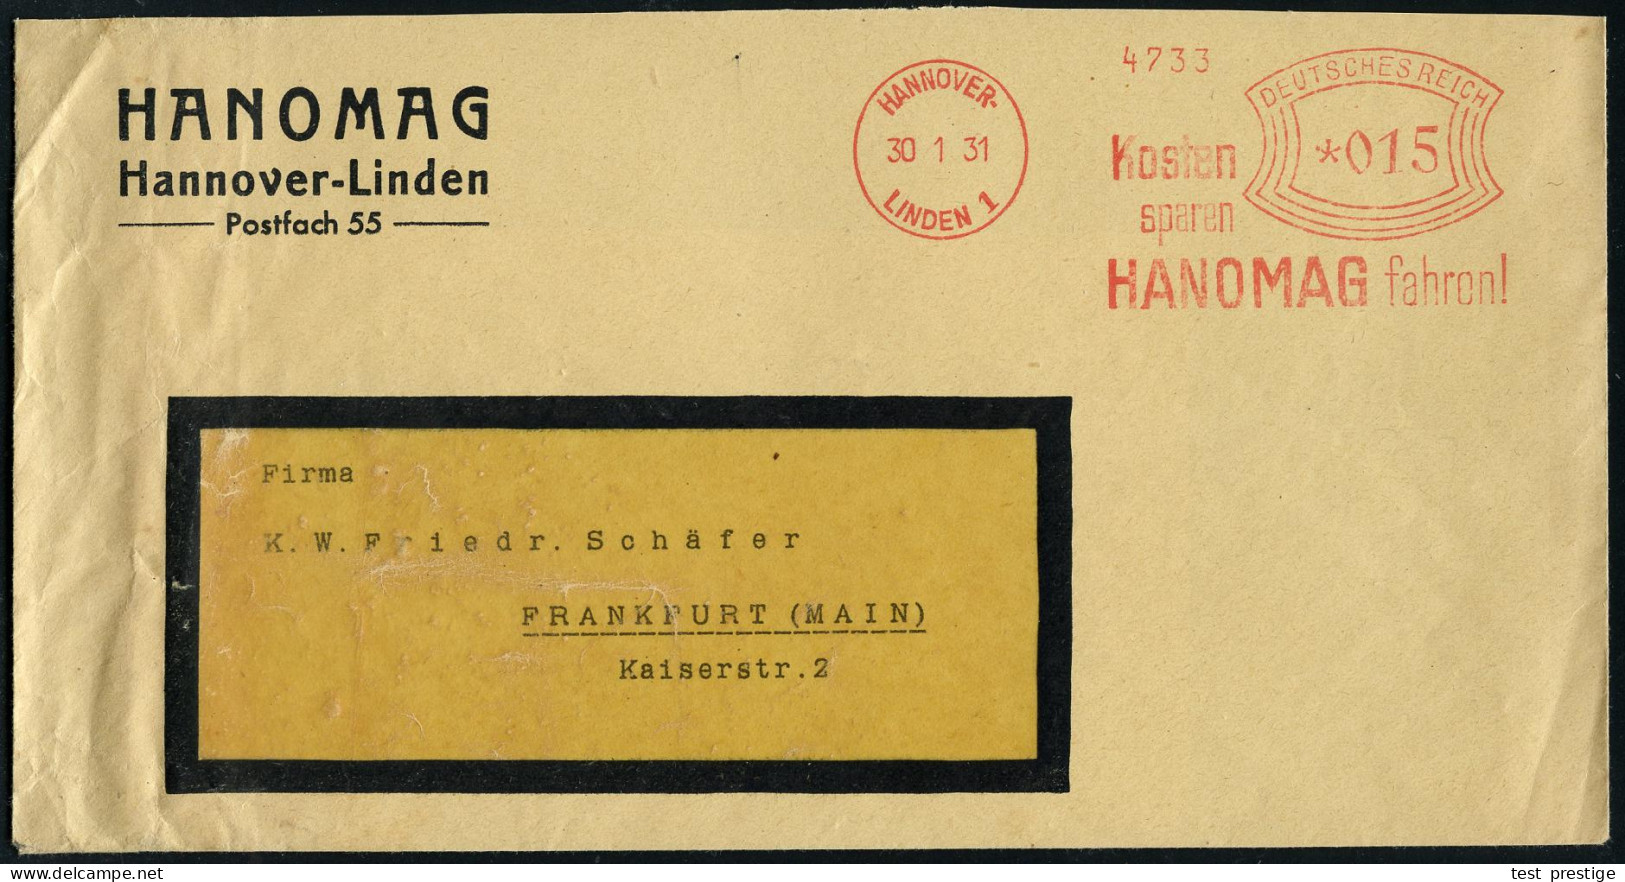 HANNOVER-/ LINDEN 1/ Kosten/ Sparen/ HANOMAG Fahren! 1931 (30.1.) AFS Francotyp Auf Firmen-Bf.: HANOMAG.. = Hersteller V - Trucks